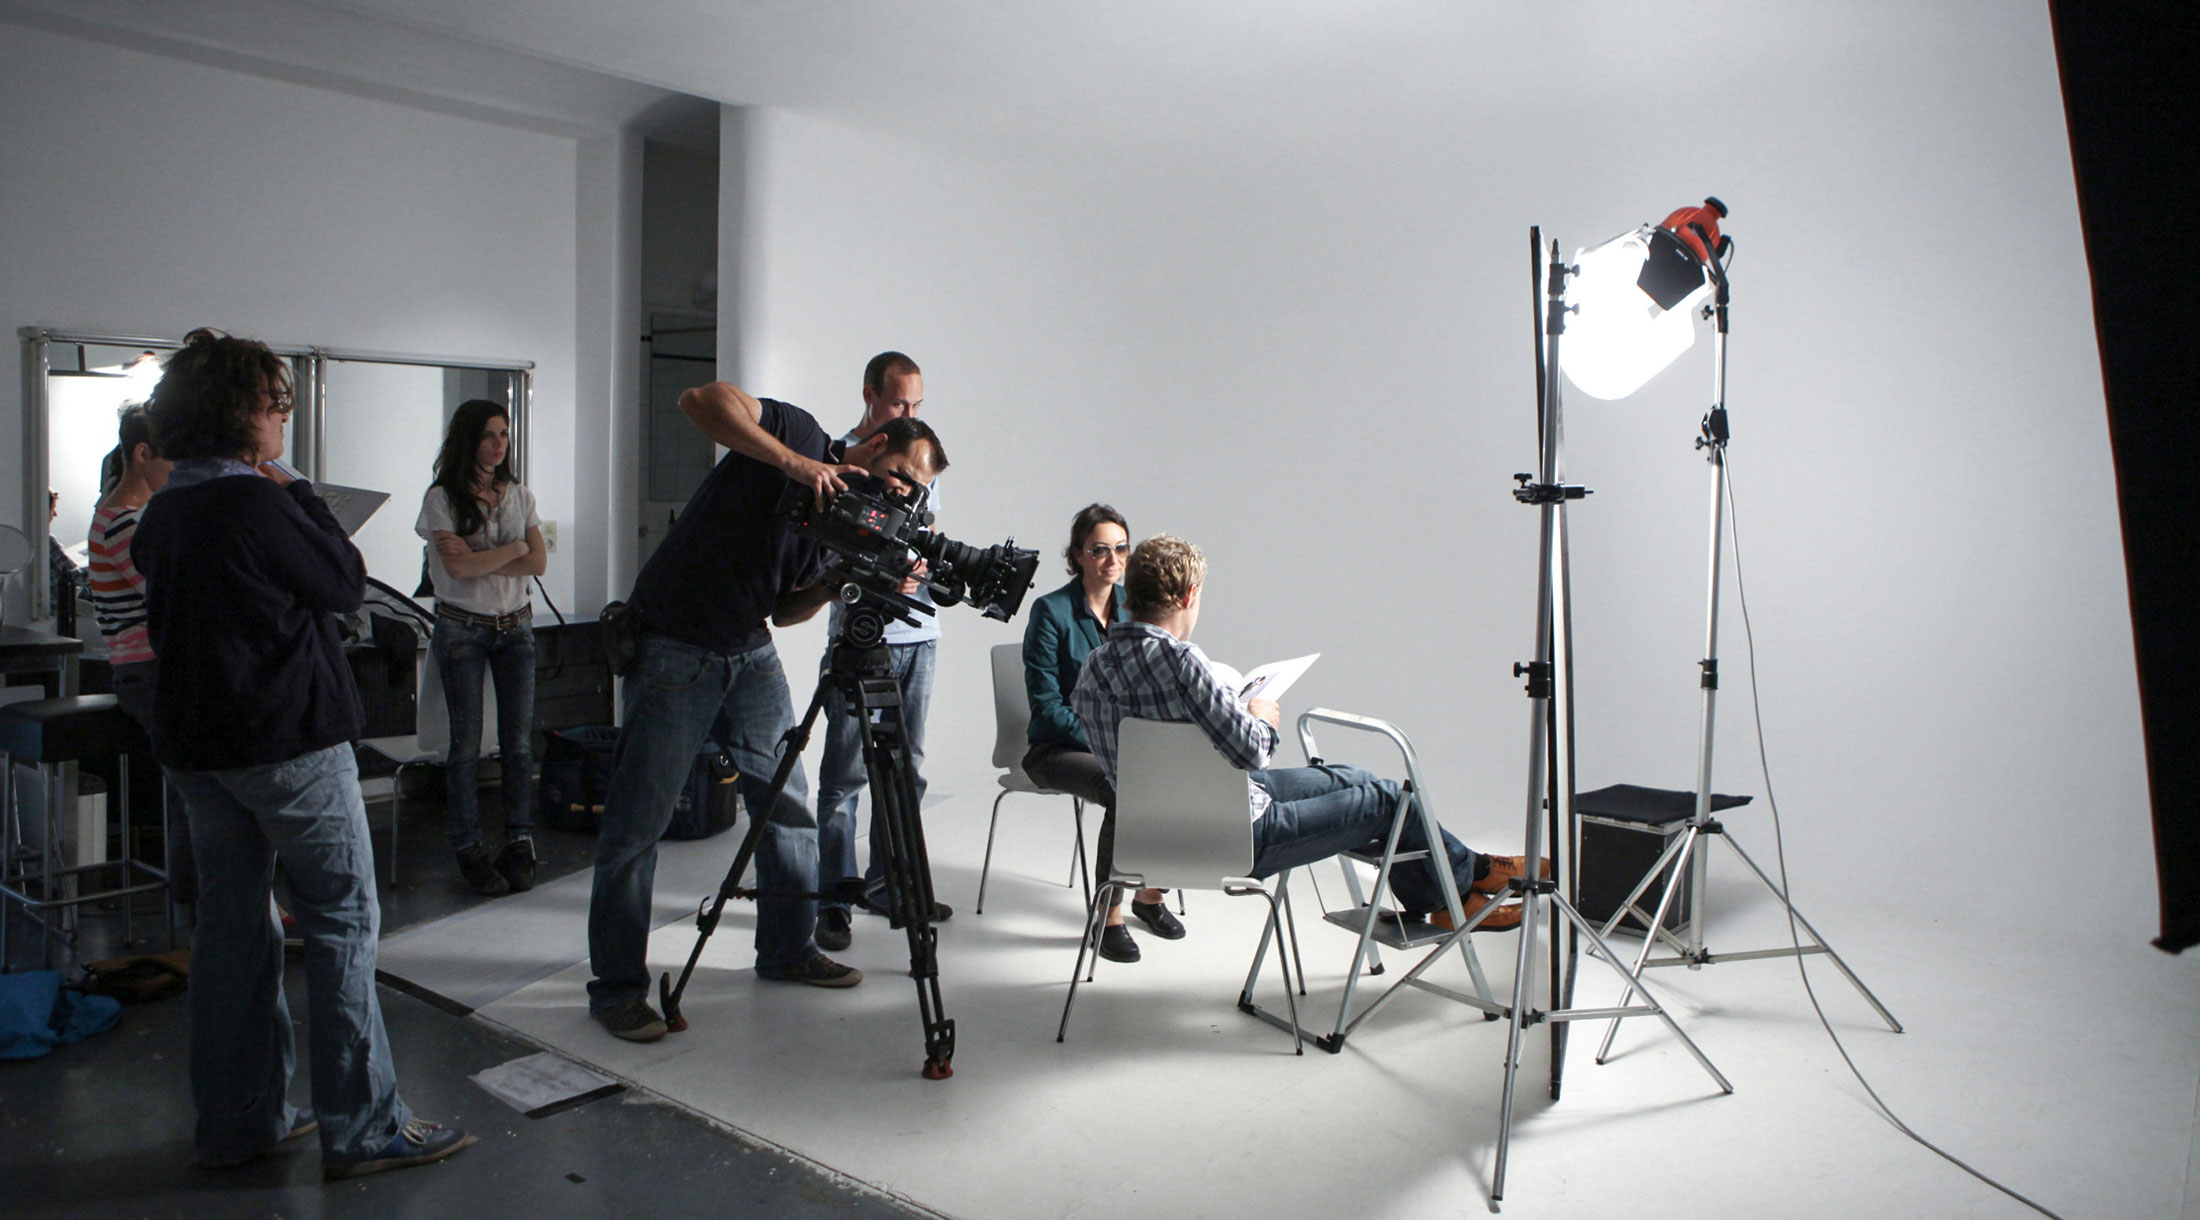 Mietstudio Wien für Fotografie, Film, Castings, Coachings, Workshops: FOTOLOFT WIEN